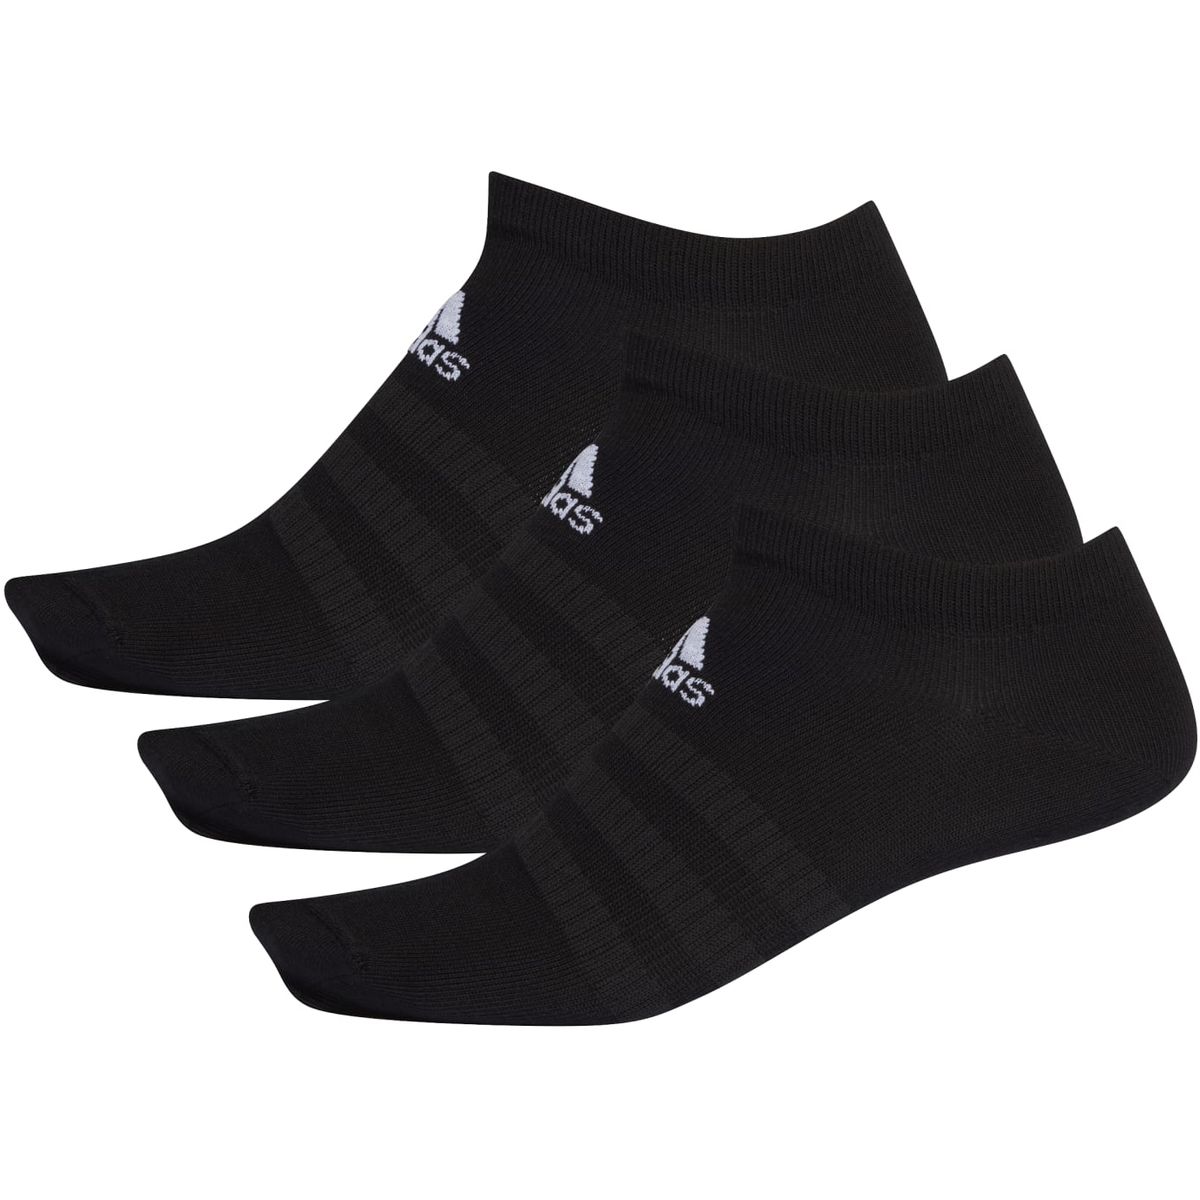 Adidas Low-Cut Socken, 3 Paar Unisex